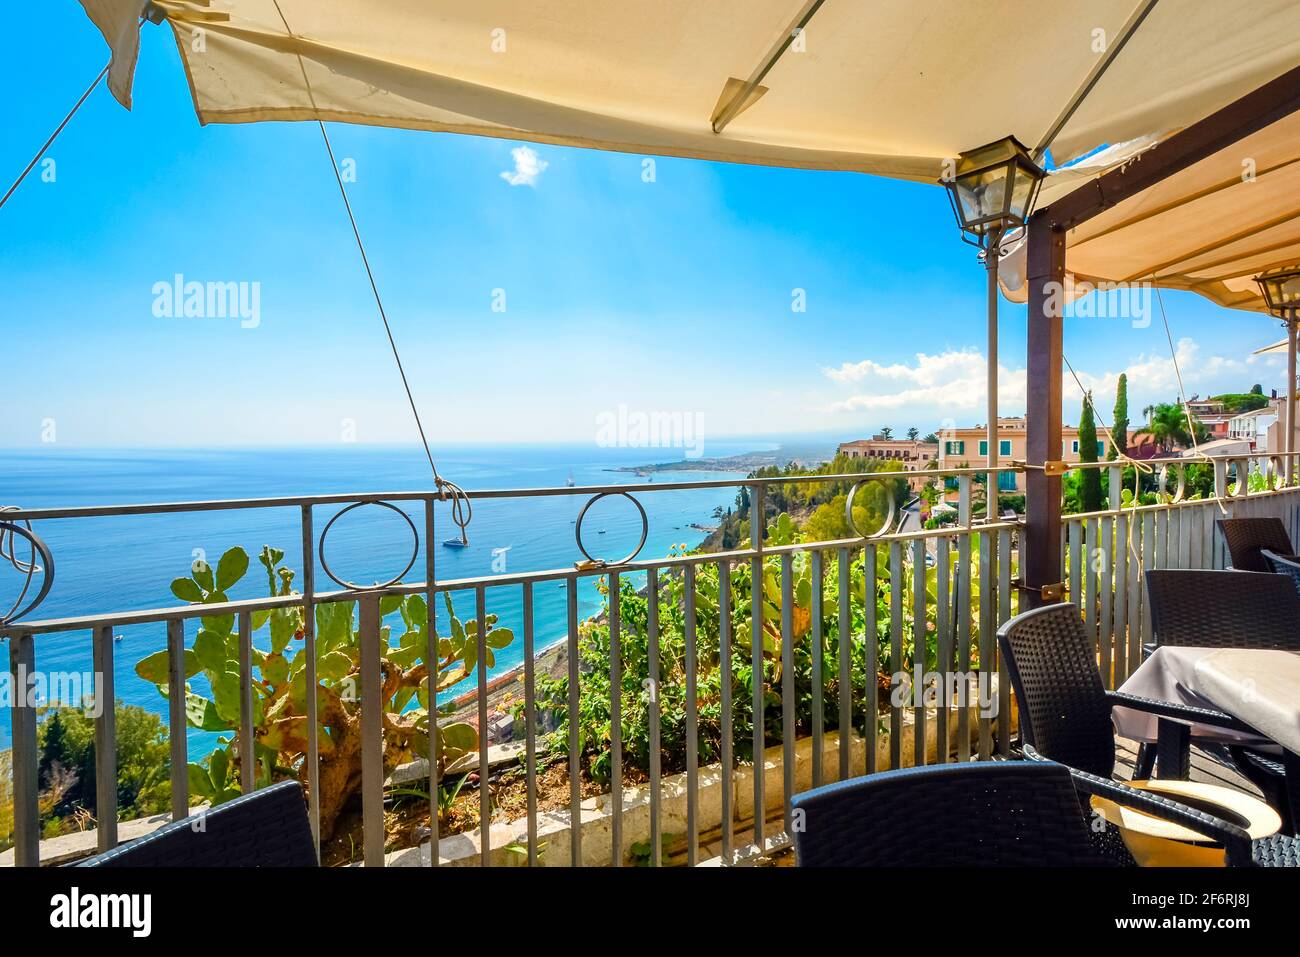 Vista desde el patio cubierto de un café en la ladera de una colina con asientos del mar Mediterráneo y la costa de Taormina, Italia, en la isla de Sicilia. Foto de stock